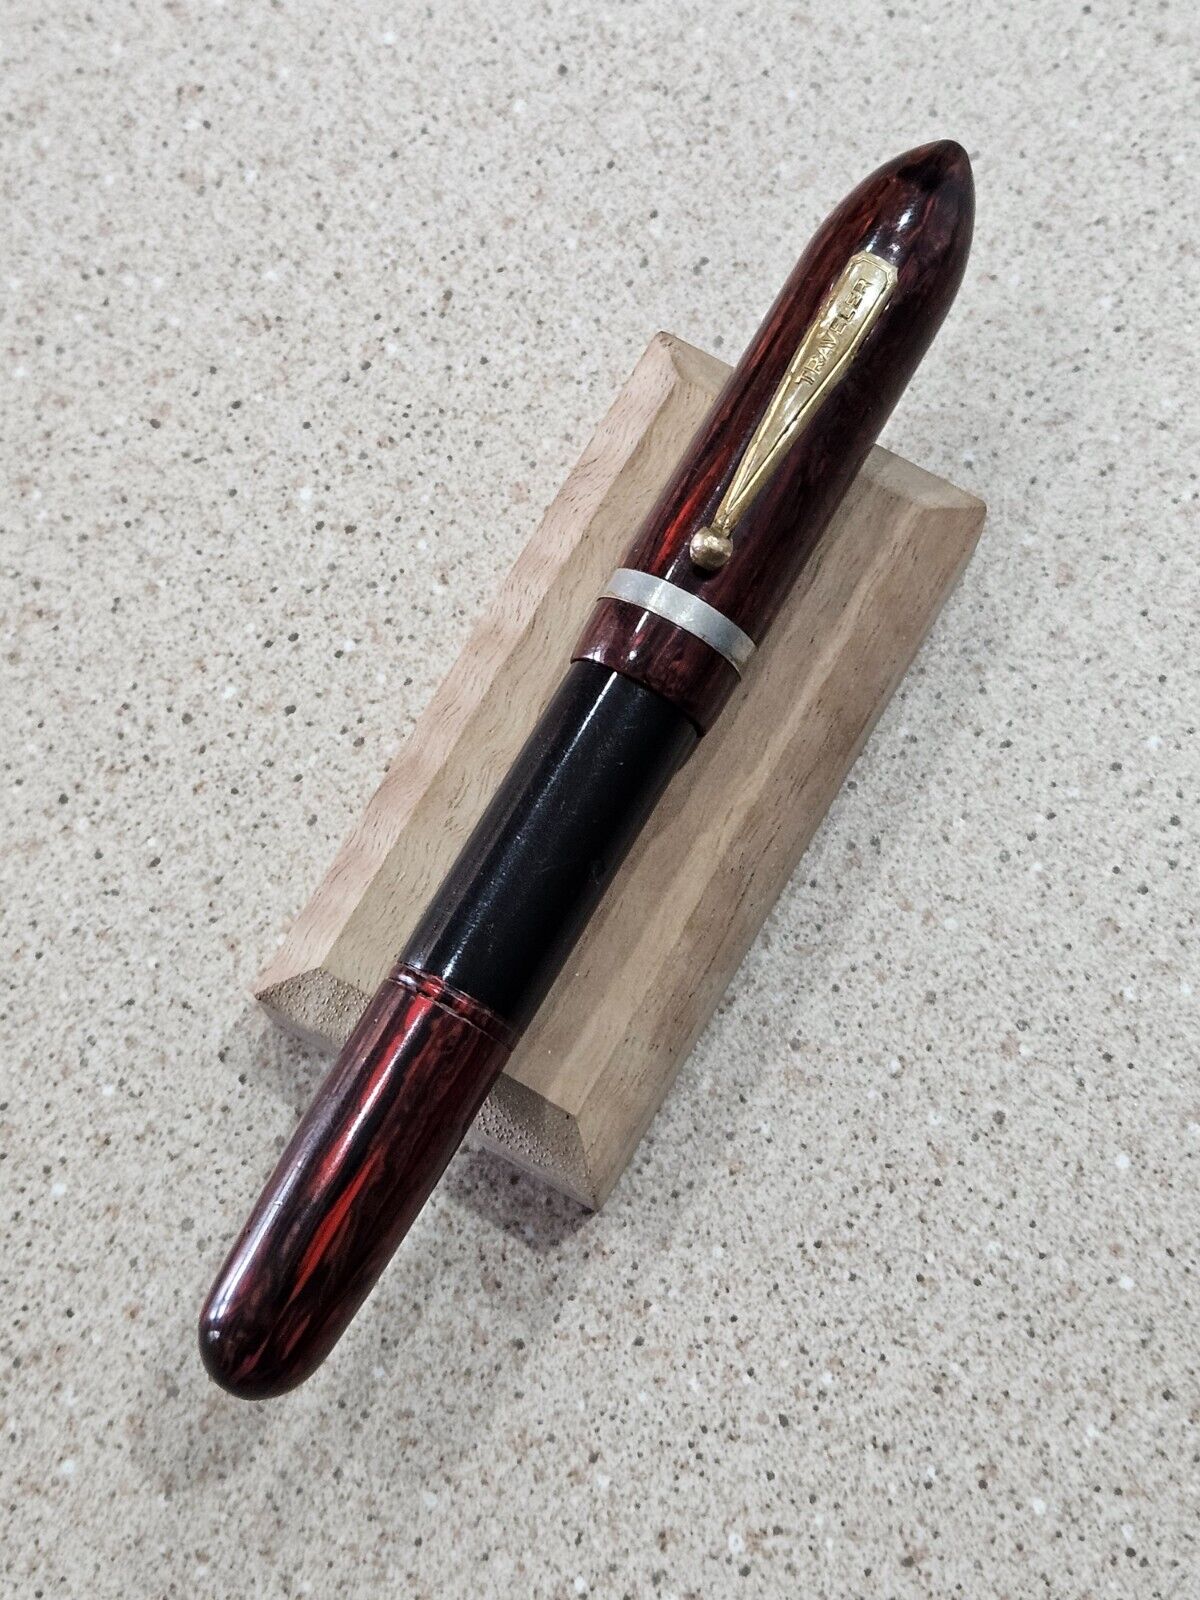 Oversized Traveler Black & Red Wood Grain Blind Cap 5.25 Inch Fountain Pen- RARE